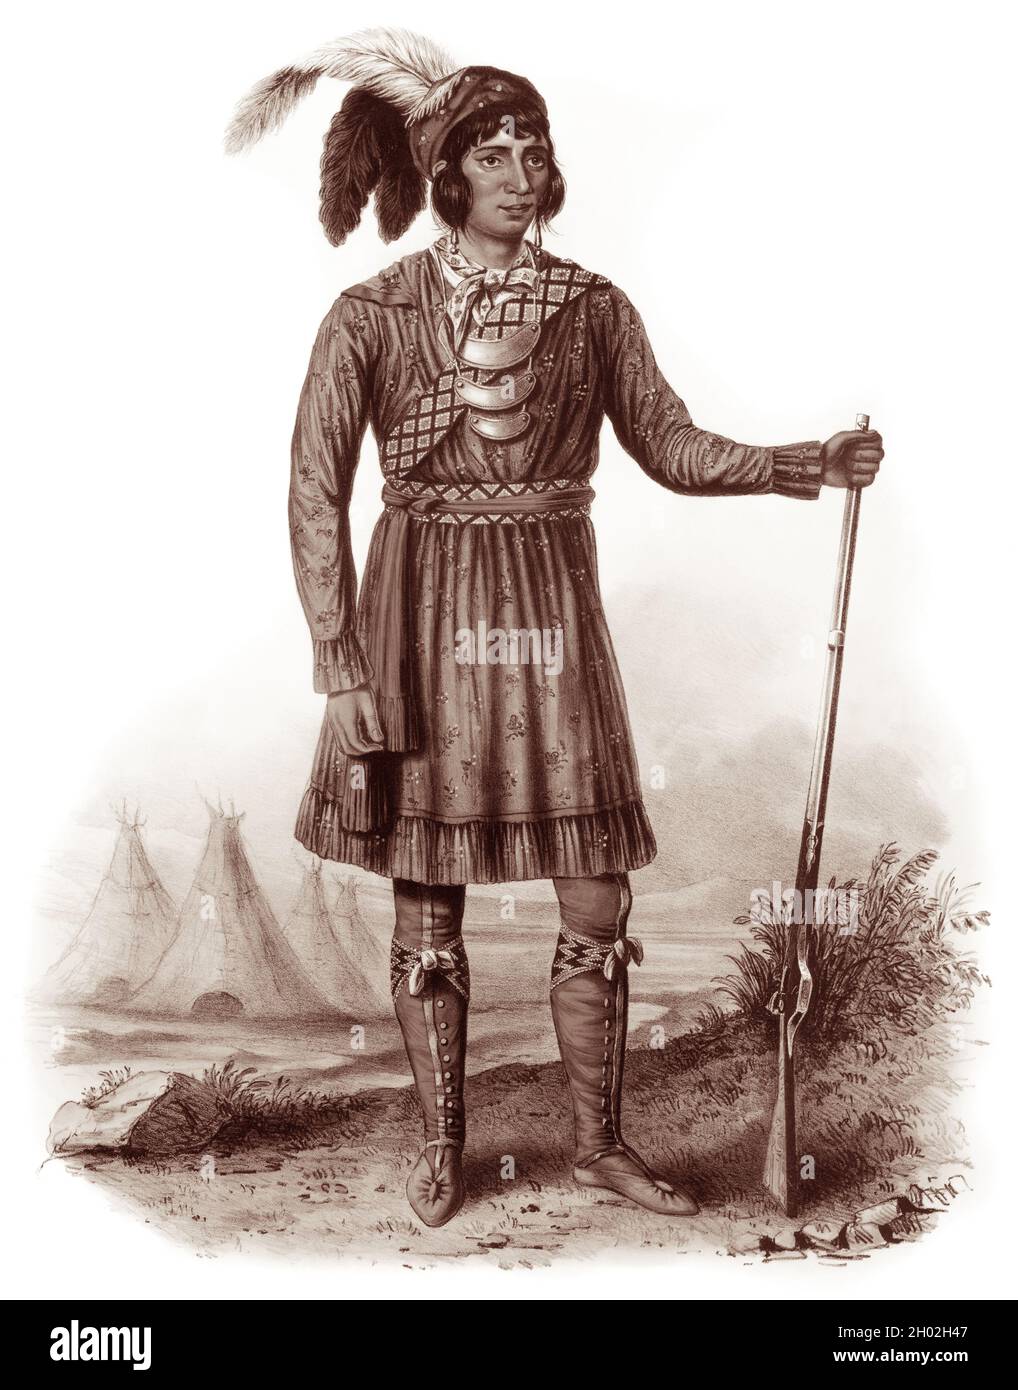 Le chef Osceola (1804-1838), le chef le plus connu des Indiens Seminole, a dirigé un petit groupe de guerriers de la résistance Seminole pendant la Seconde Guerre Seminole, lorsque les États-Unis ont tenté de retirer la tribu de leurs terres en Floride vers le territoire indien à l'ouest du Mississippi. Banque D'Images